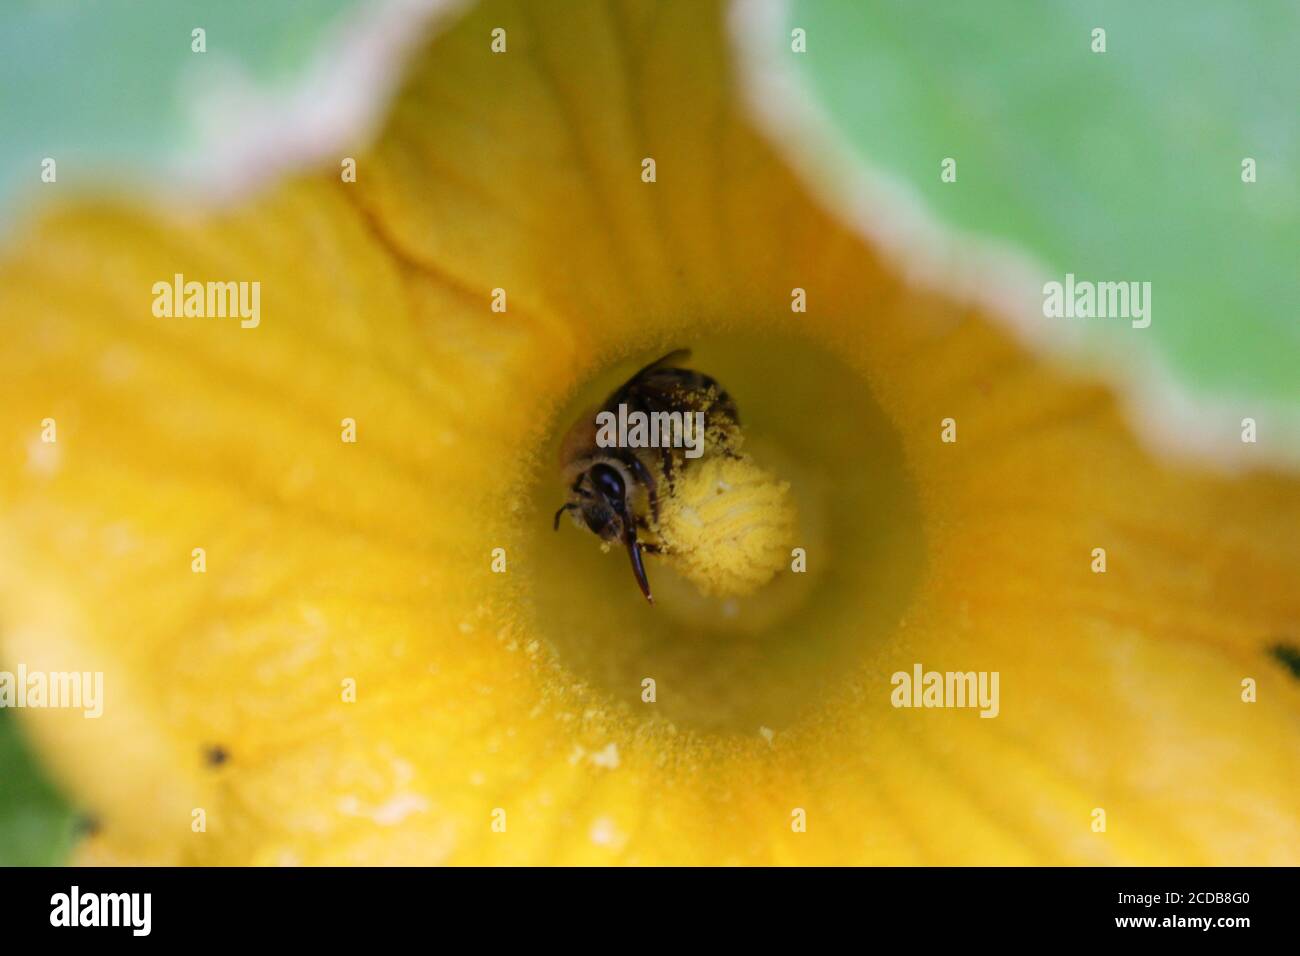 Giardino urbano del cortile biologico di un'ape comune del giardino impollinante un fiore enorme della zucca arancione. Foto Stock